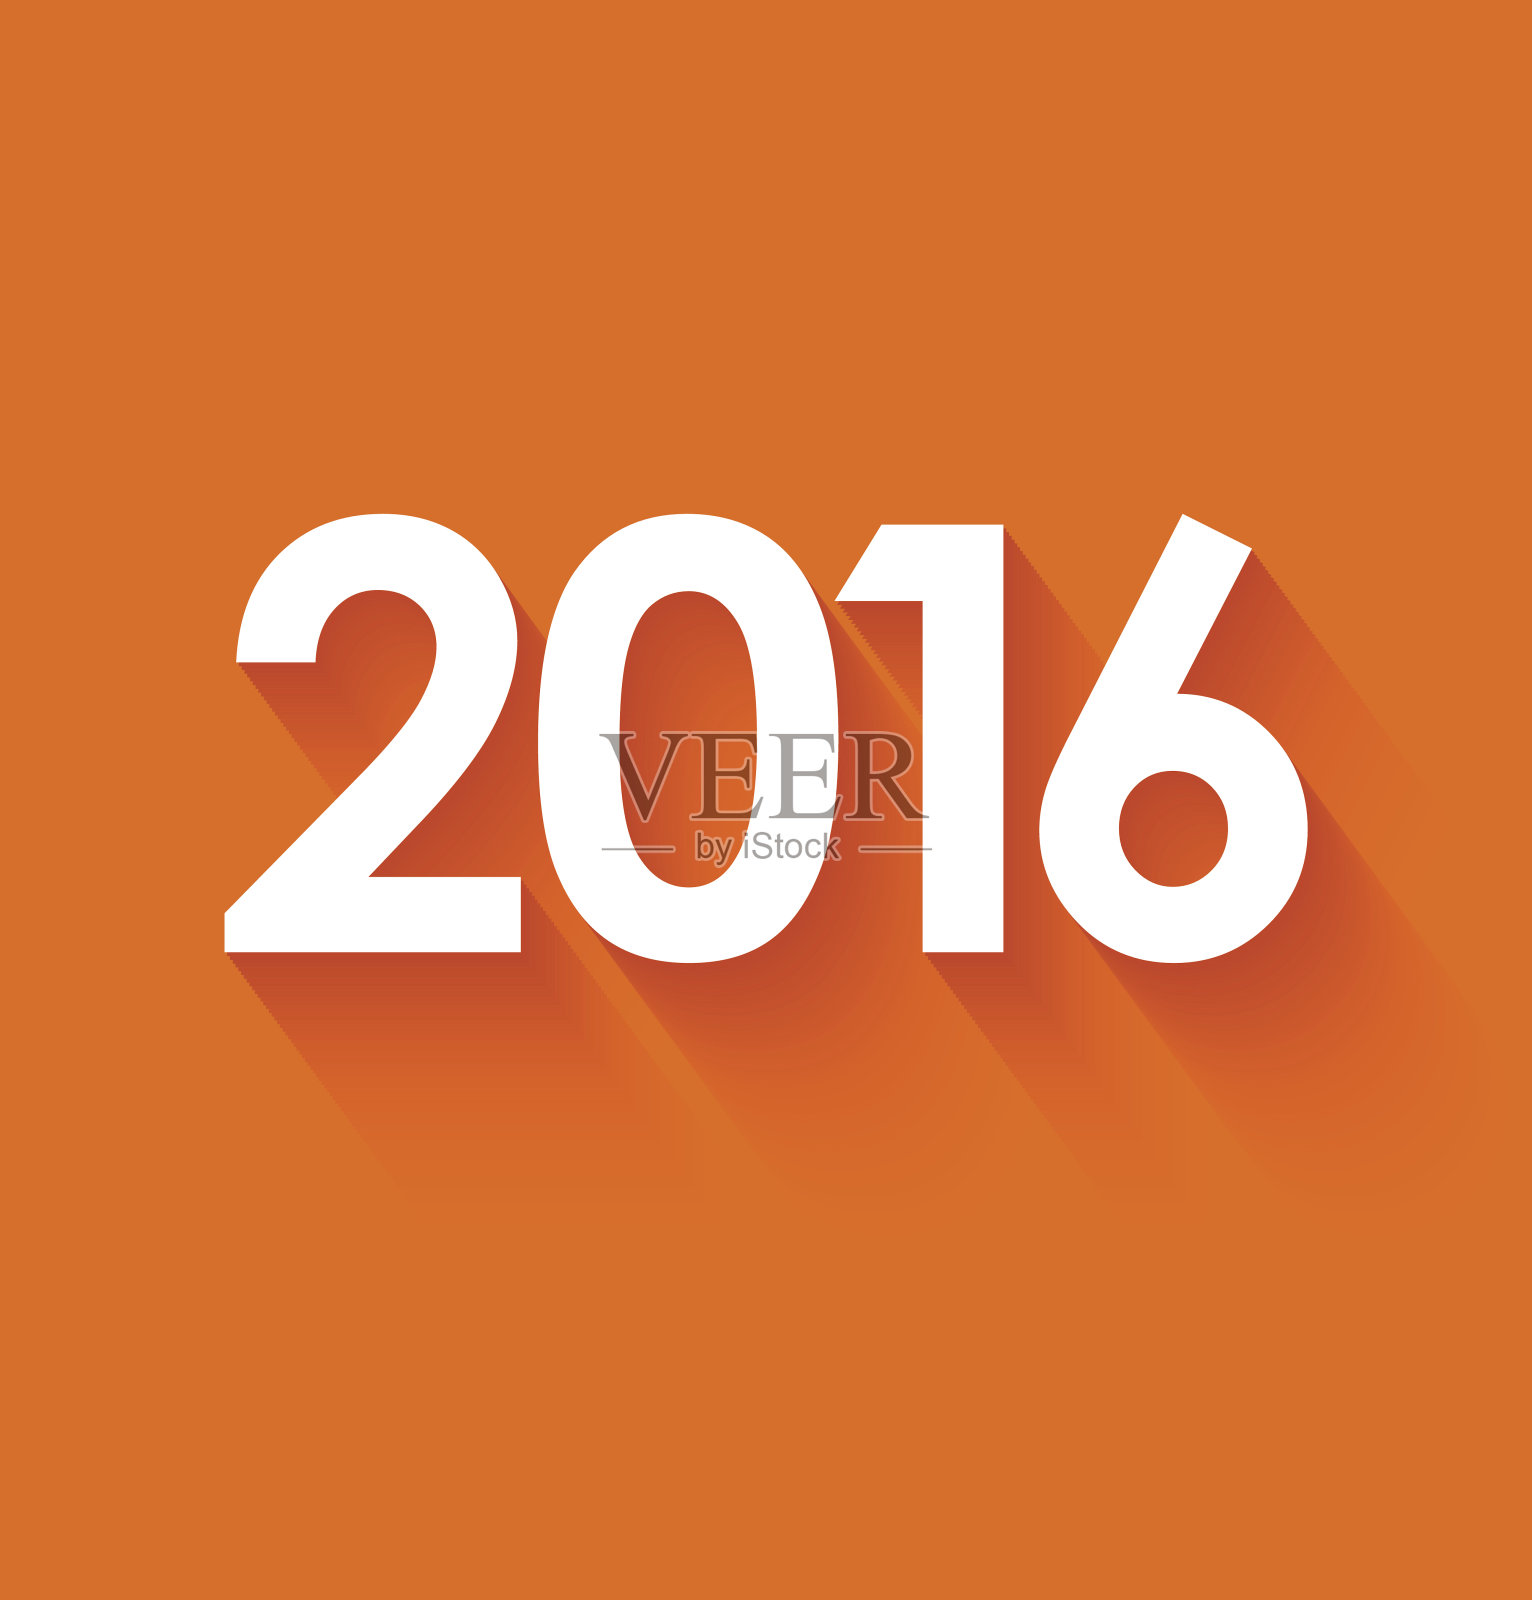 2016年新年在橙色背景平风格插画图片素材